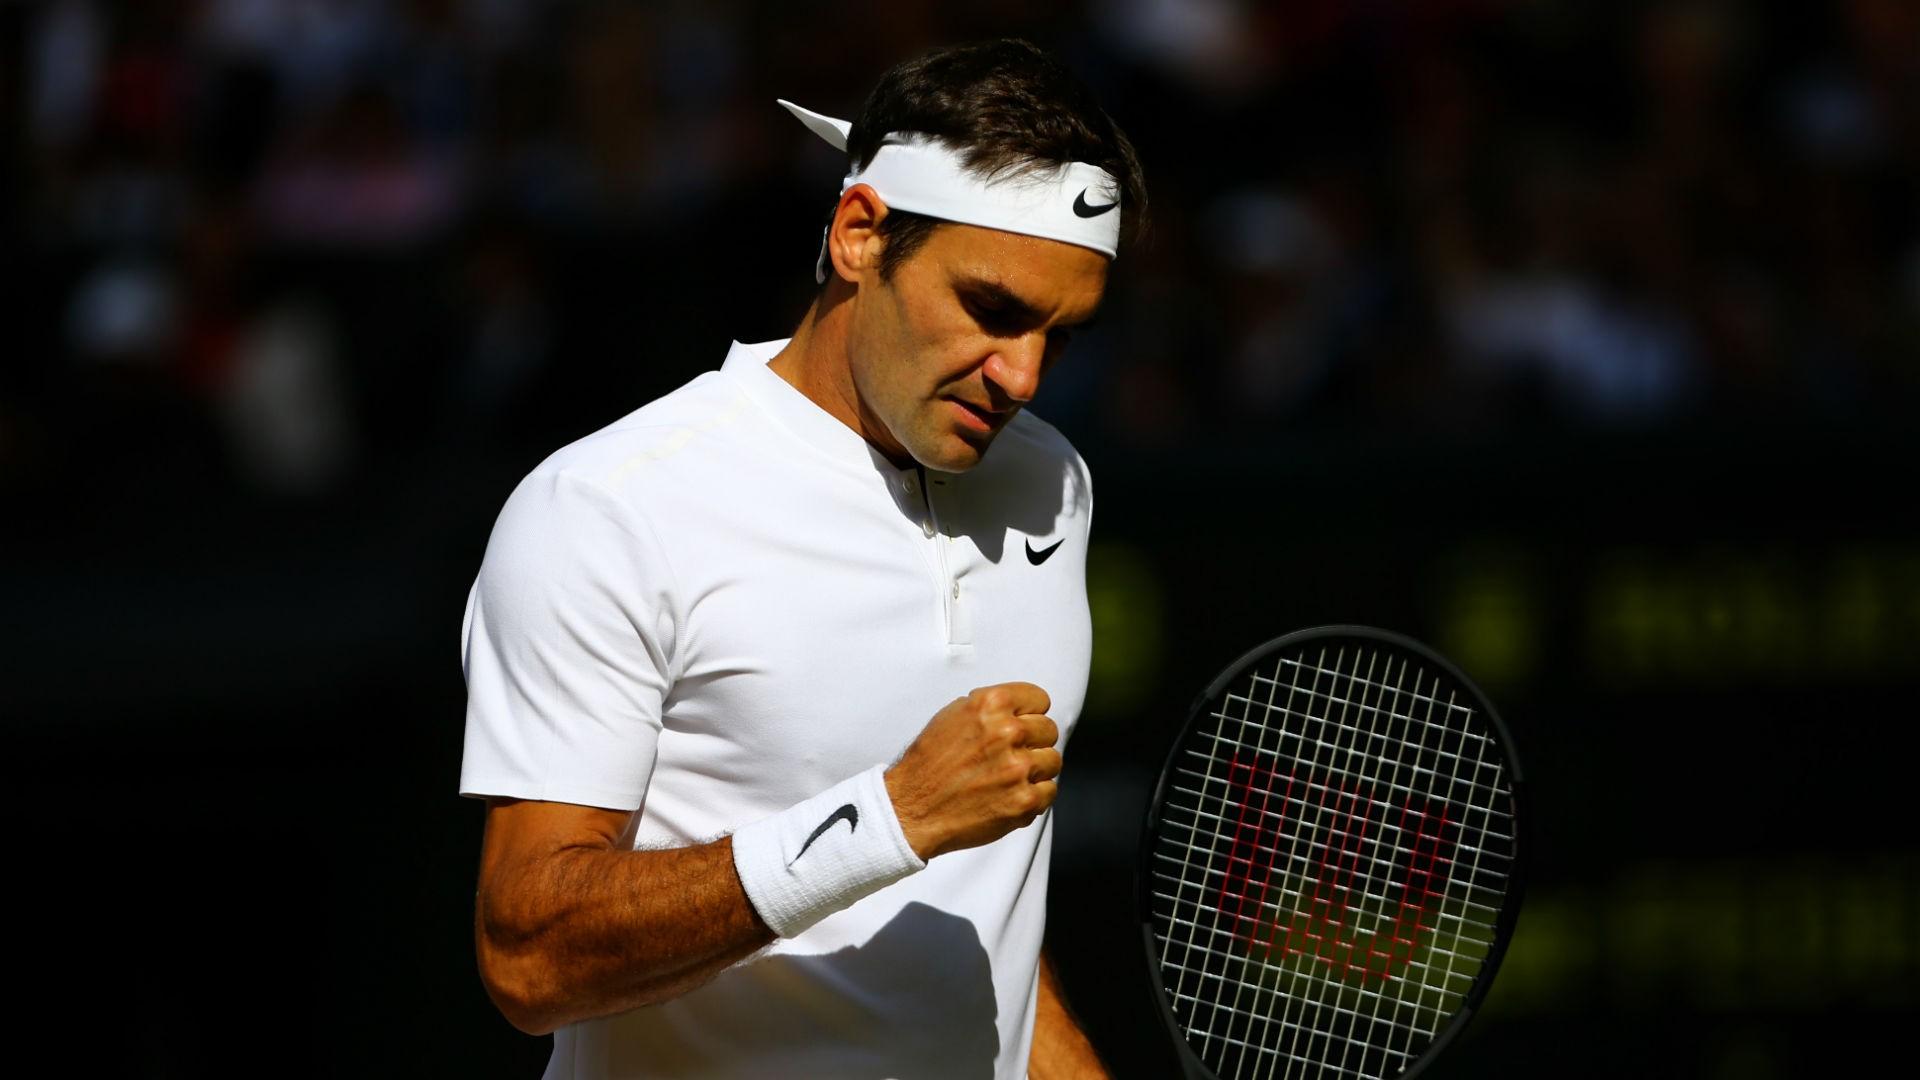 Roger Federer Wallpaper and Background Image